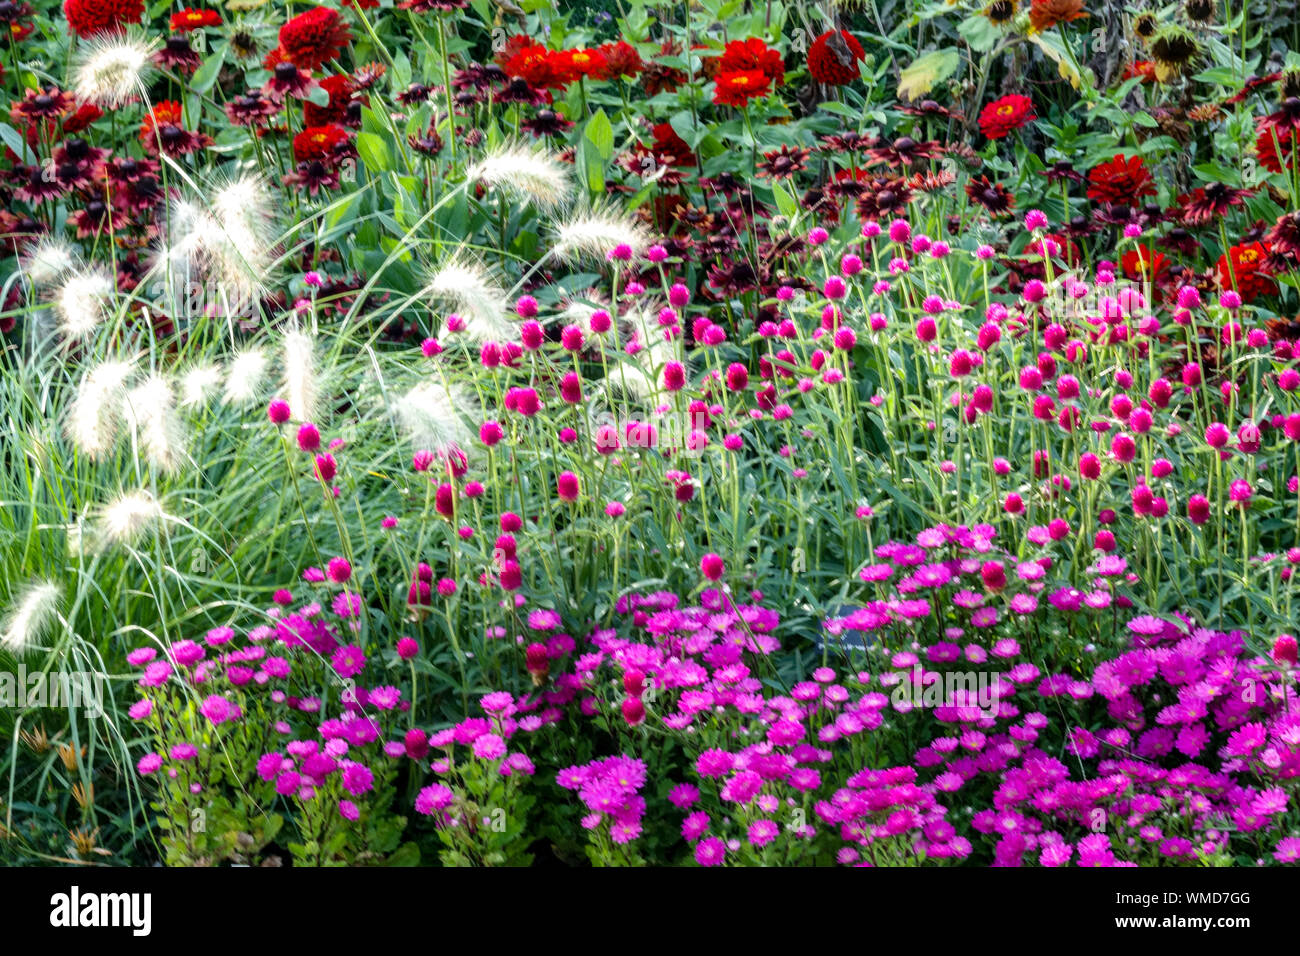 Schöne Gartenränder, bunte Blumen, gemischte Einjährige und Stauden Pflanzen im Sommerblumenbett, Pennisetum, Zinnias, Purple Aster Asters Stockfoto